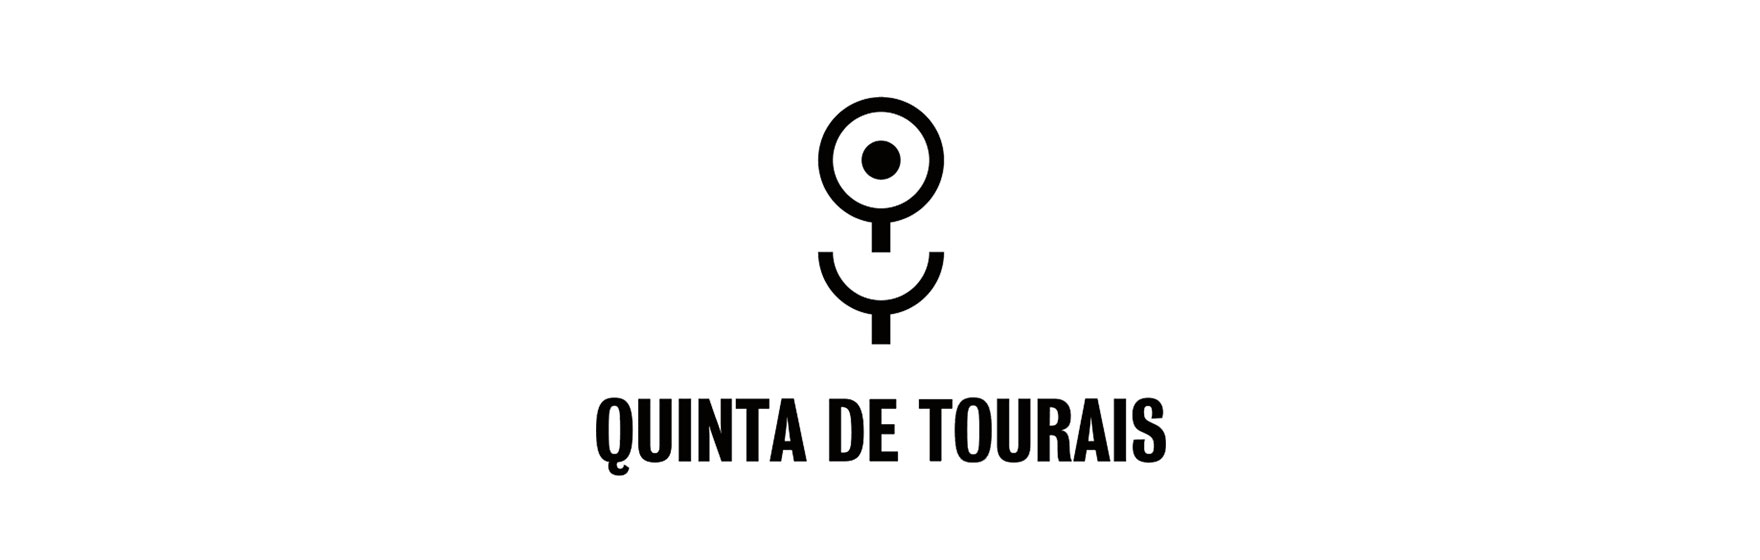 Quinta de Tourais